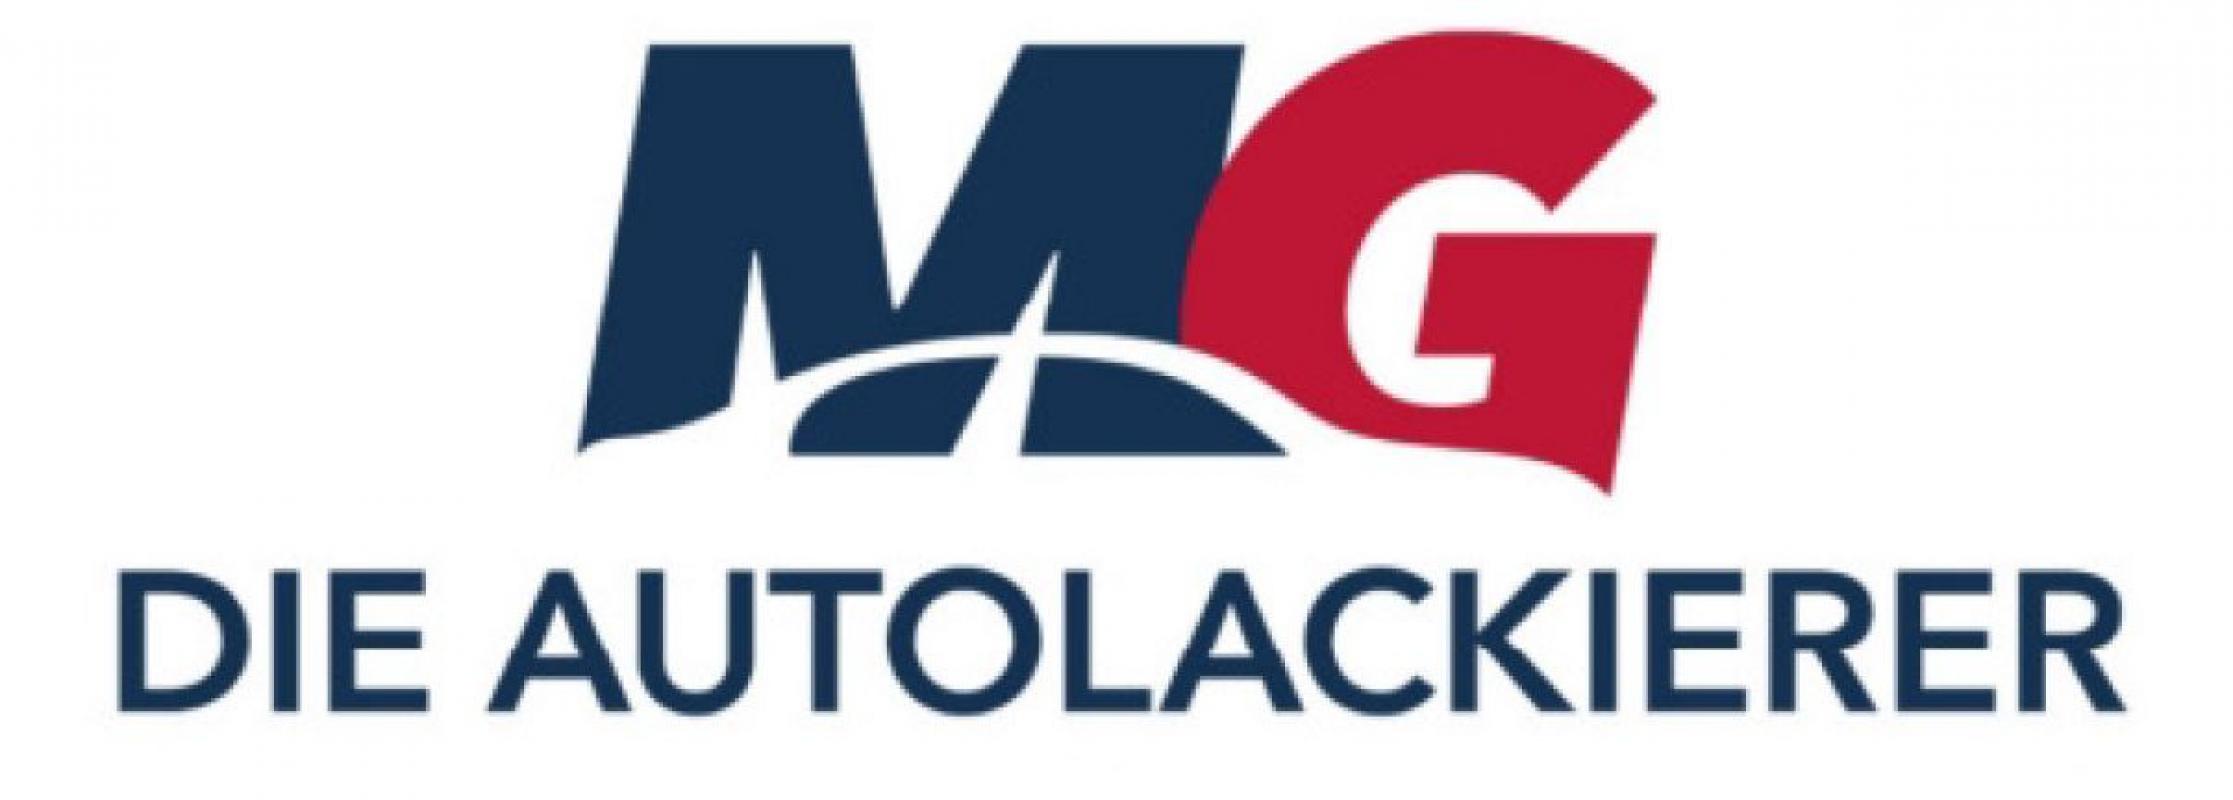 MG Autolackierer GmbH